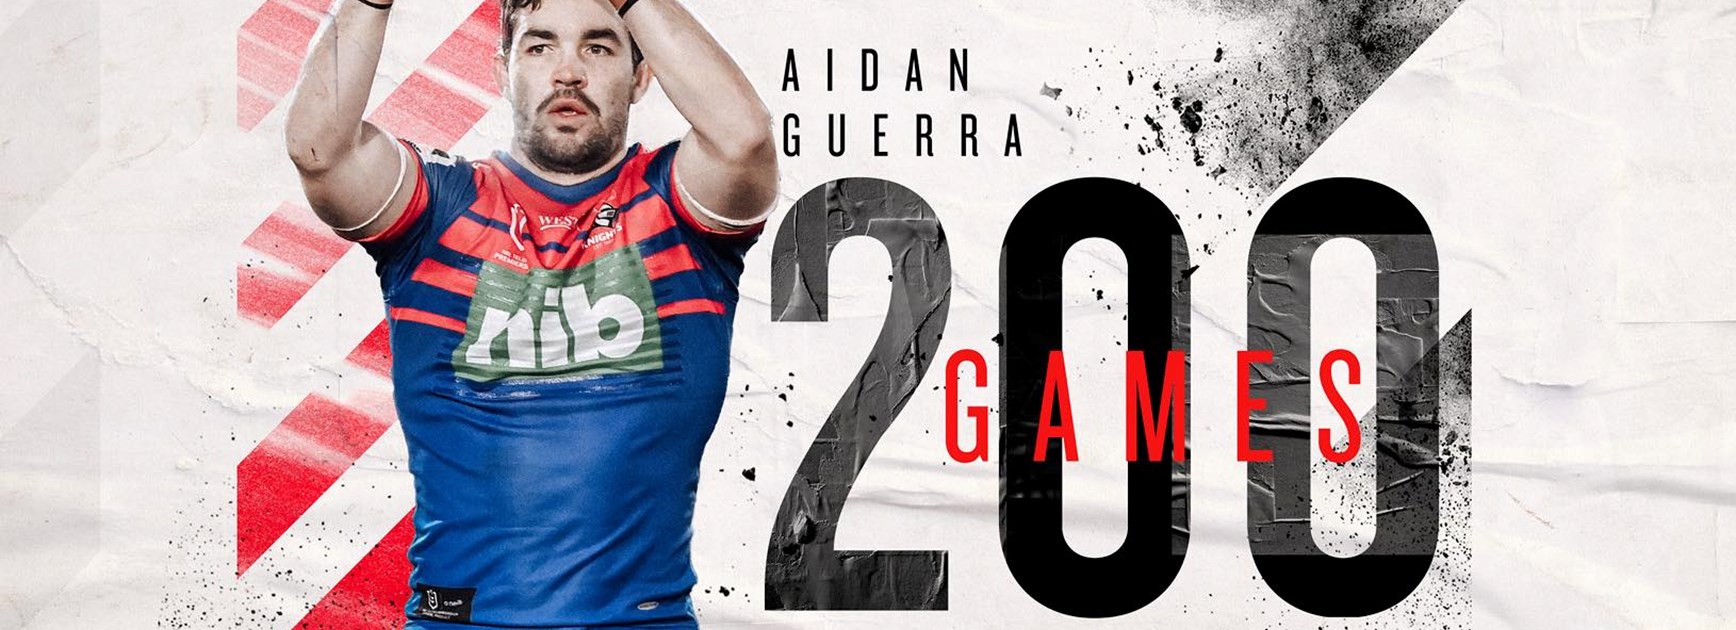 Aidan Guerra's road to 200 games